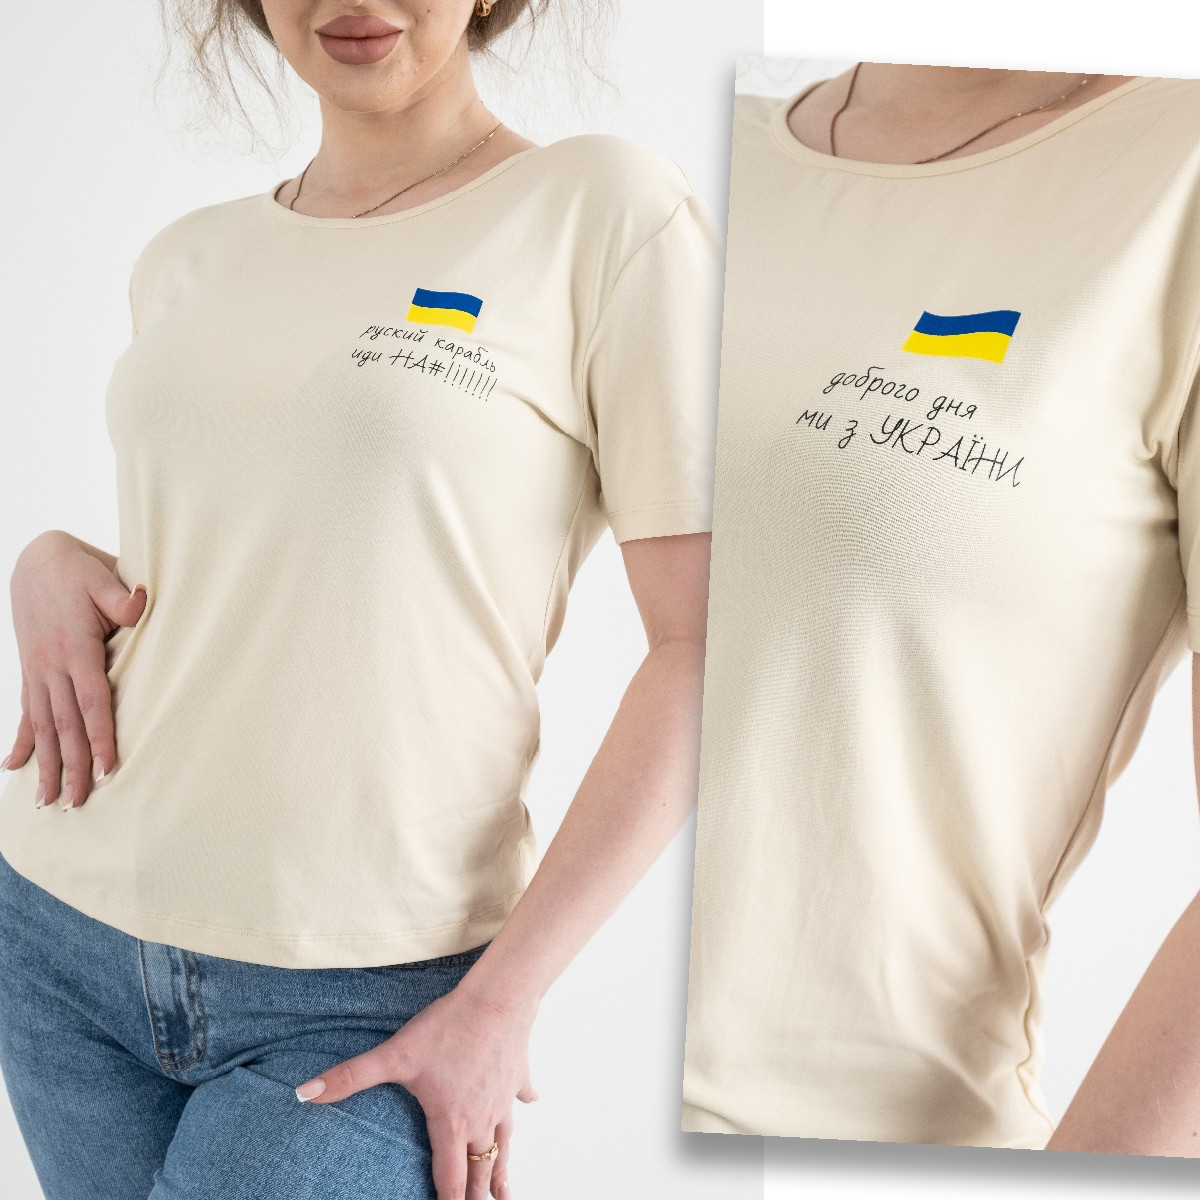 8263 МИКС ПРИНТОВ бежевая футболка женская полубатальная патриотическая (4 ед.размеры: M.L.XL/2)